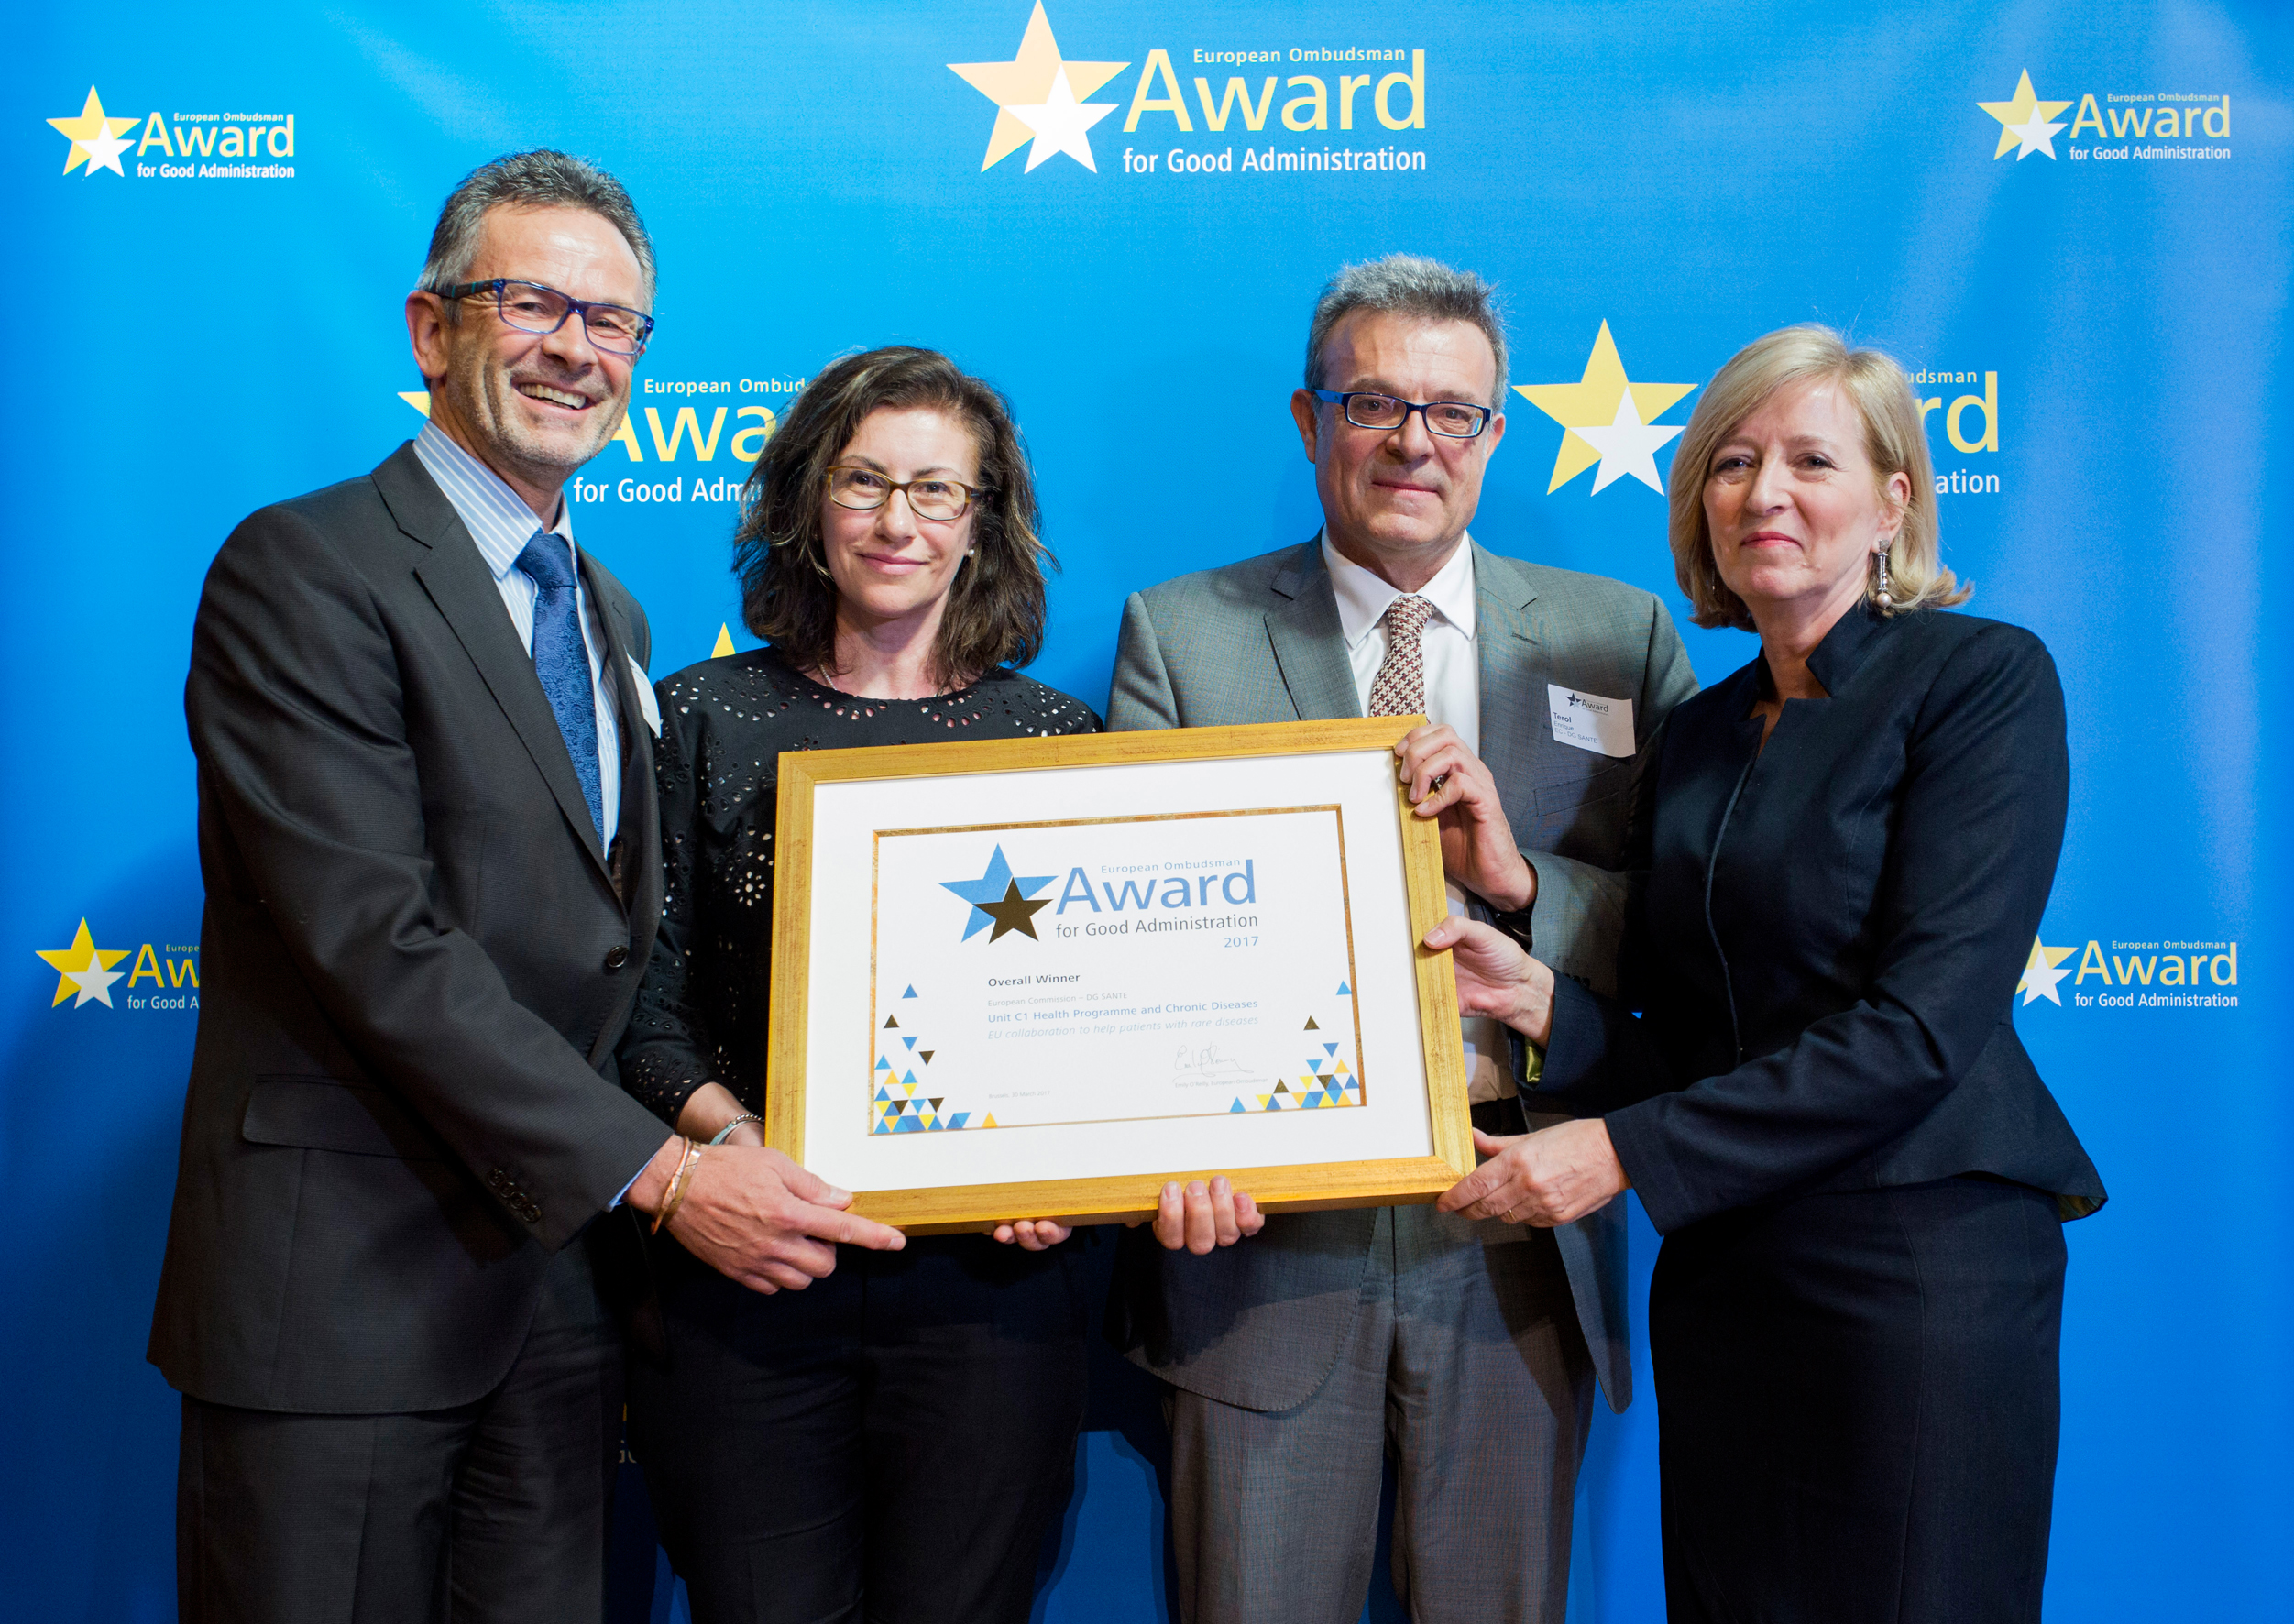 De uiteindelijke winnaars van de prijs van de Europese Ombudsman voor goed bestuur 2017, van het directoraat-generaal Gezondheid en Voedselveiligheid van de Commissie, ontvangen de onderscheiding uit handen van de Europese ombudsvrouw, Emily O’Reilly.